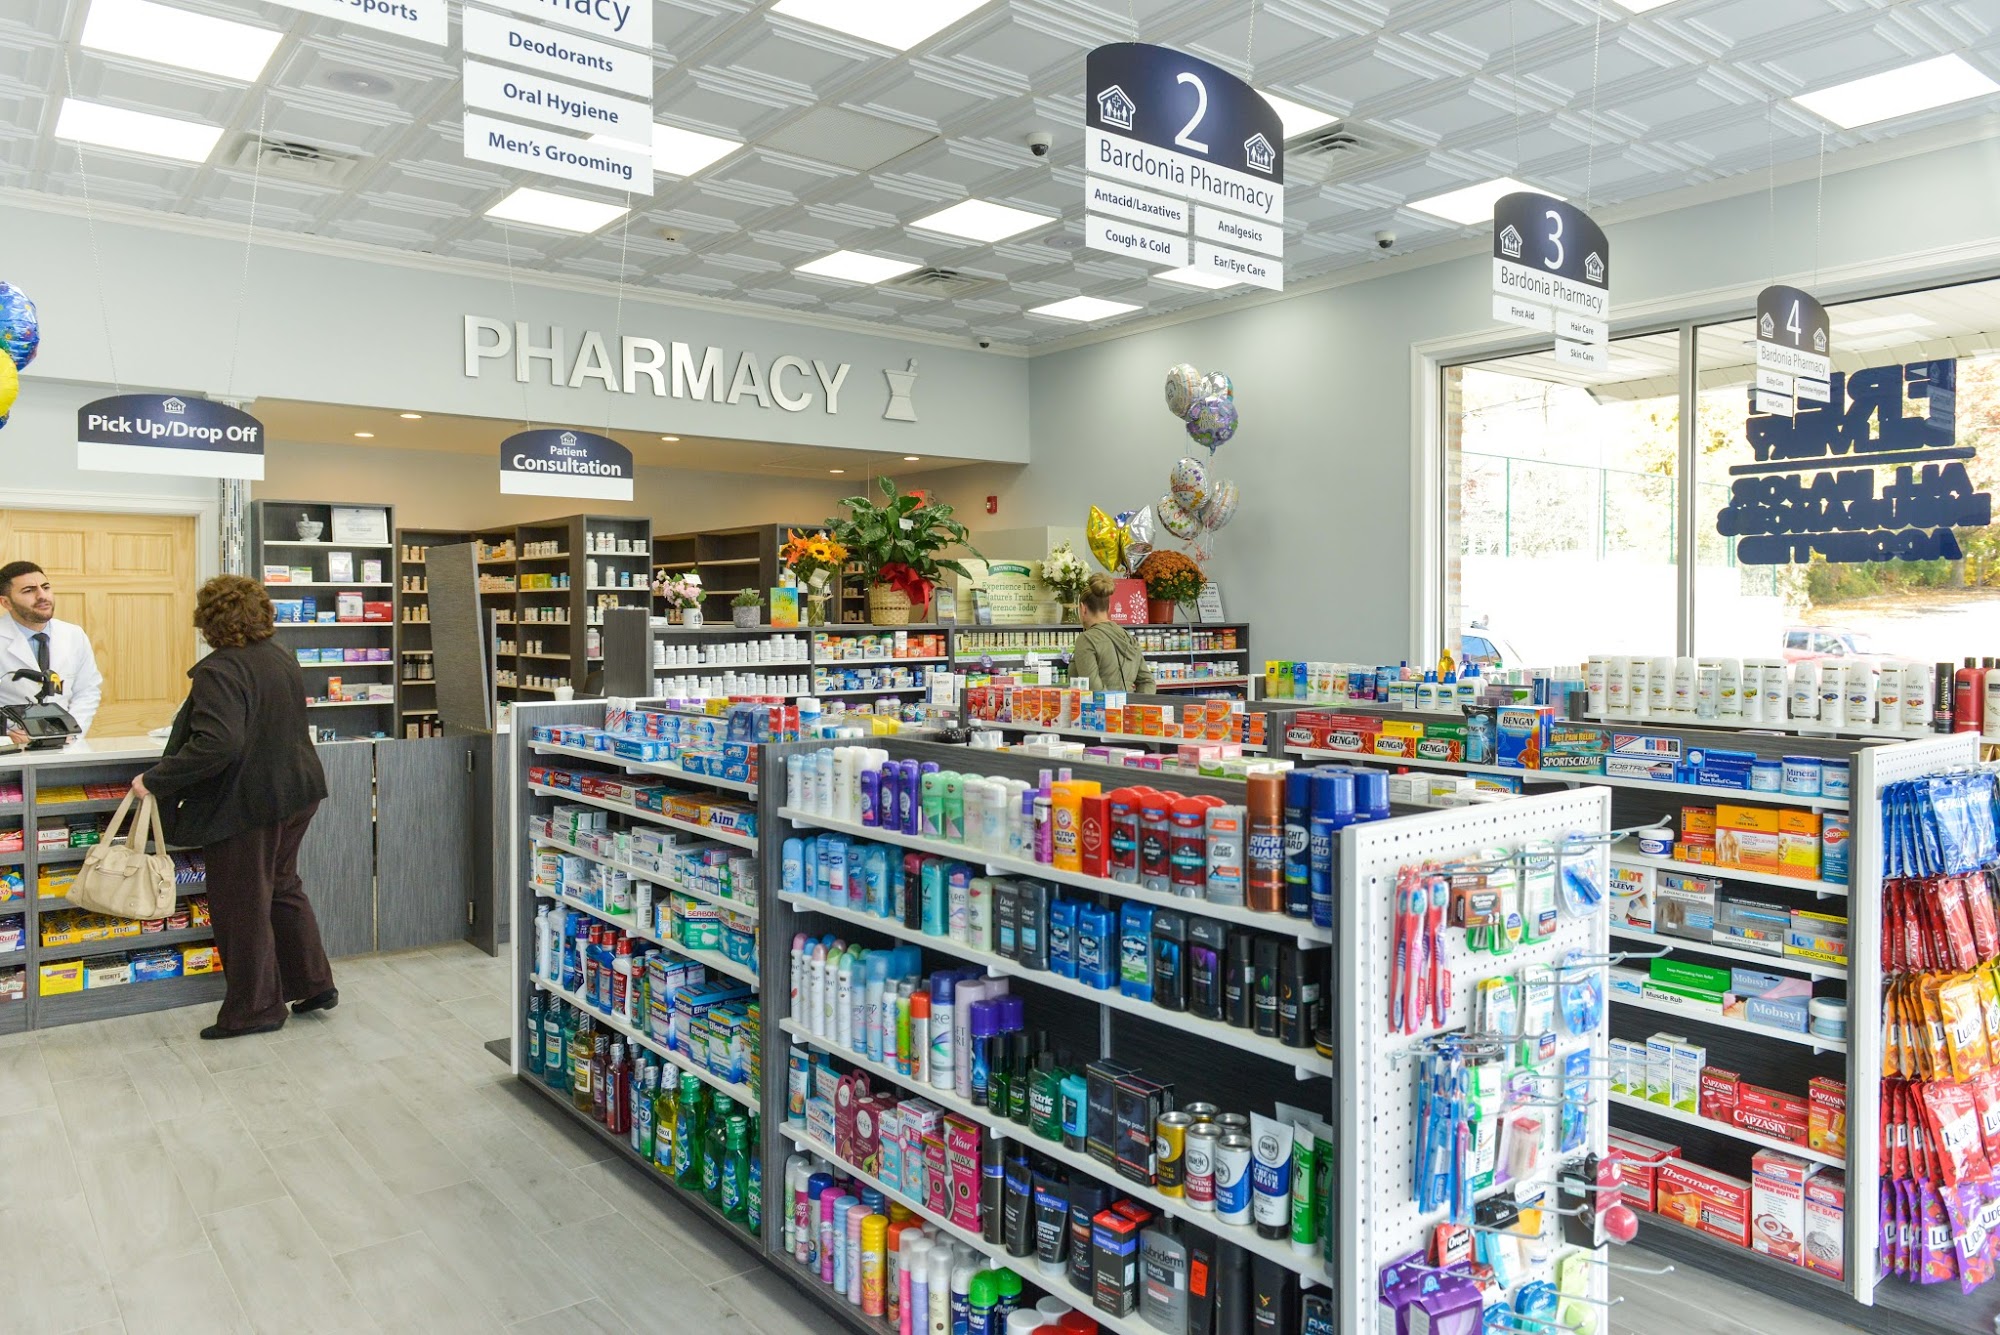 Bardonia Pharmacy